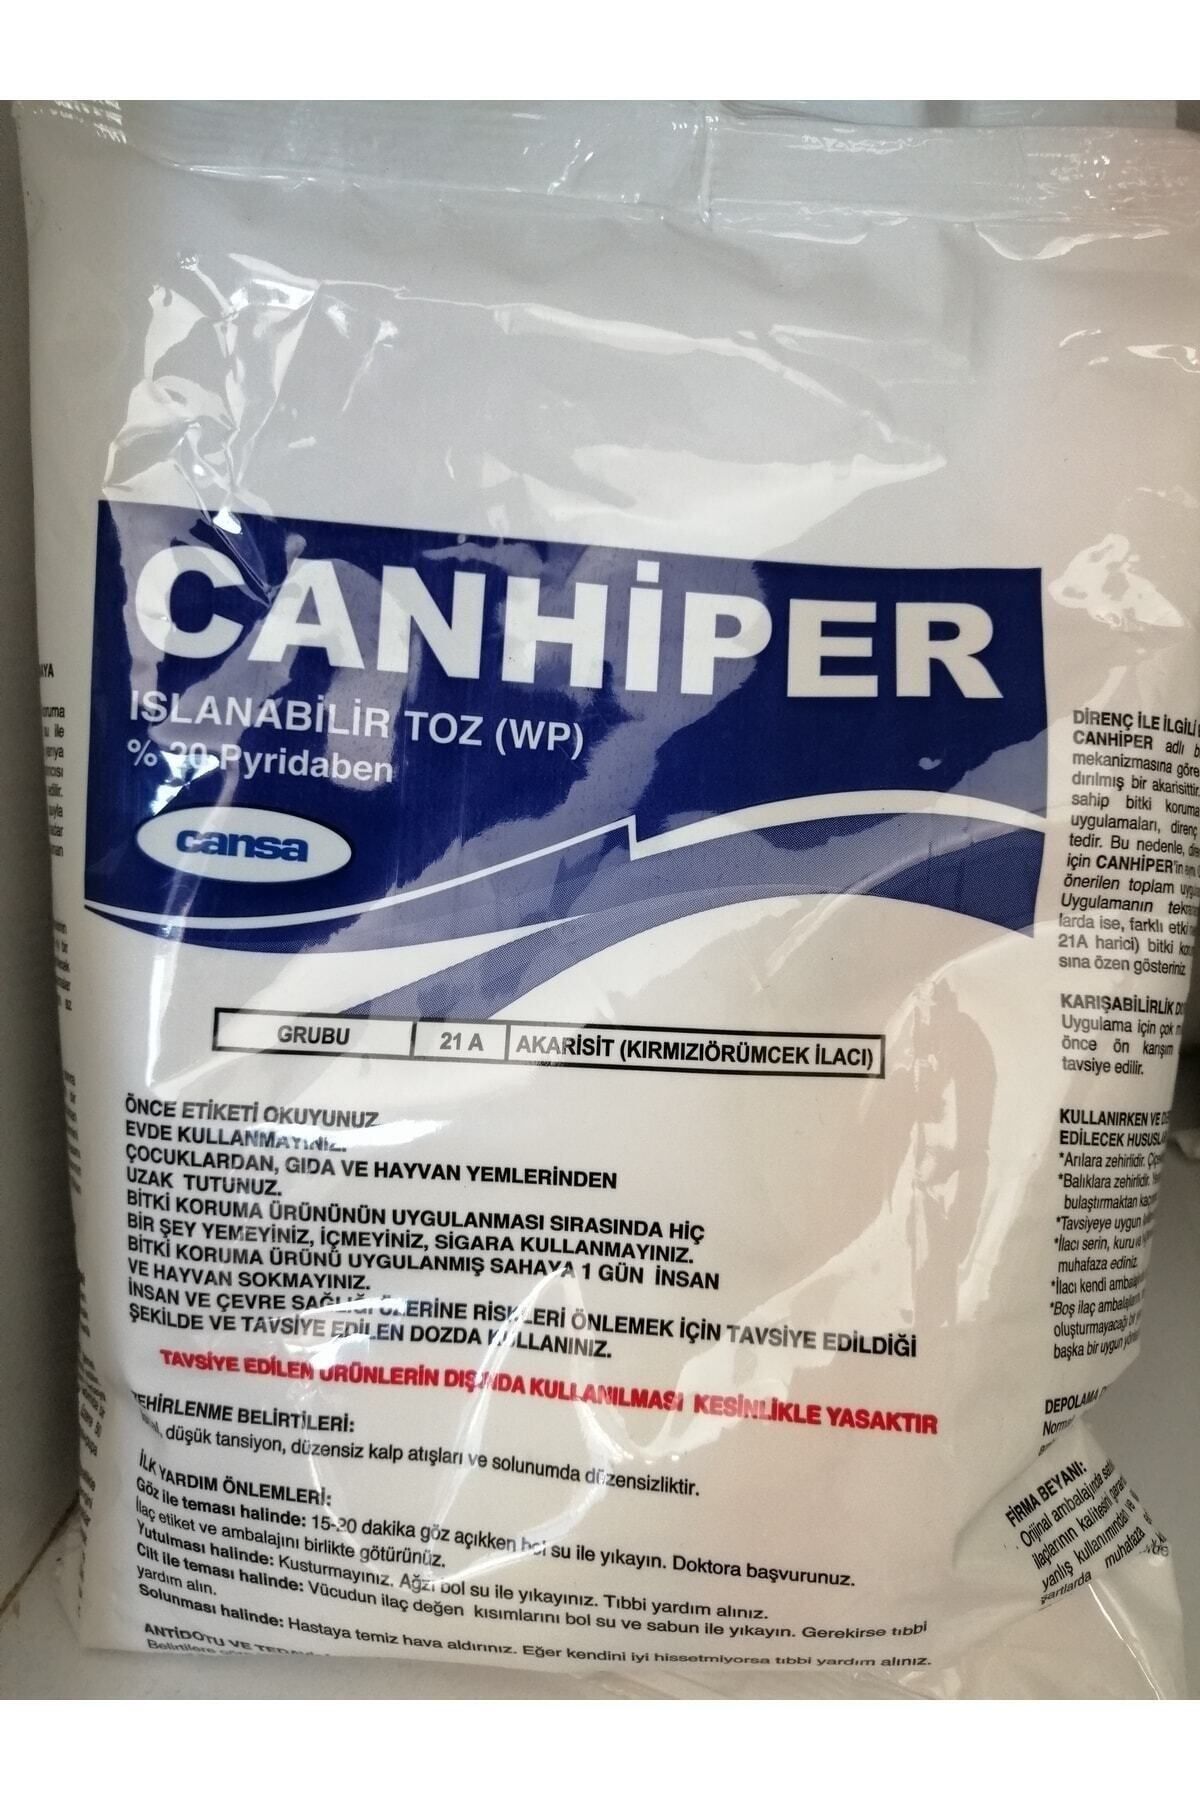 CANSA Canhiper 500gr Bit Pire Kırmızı Örümcek Ilacı